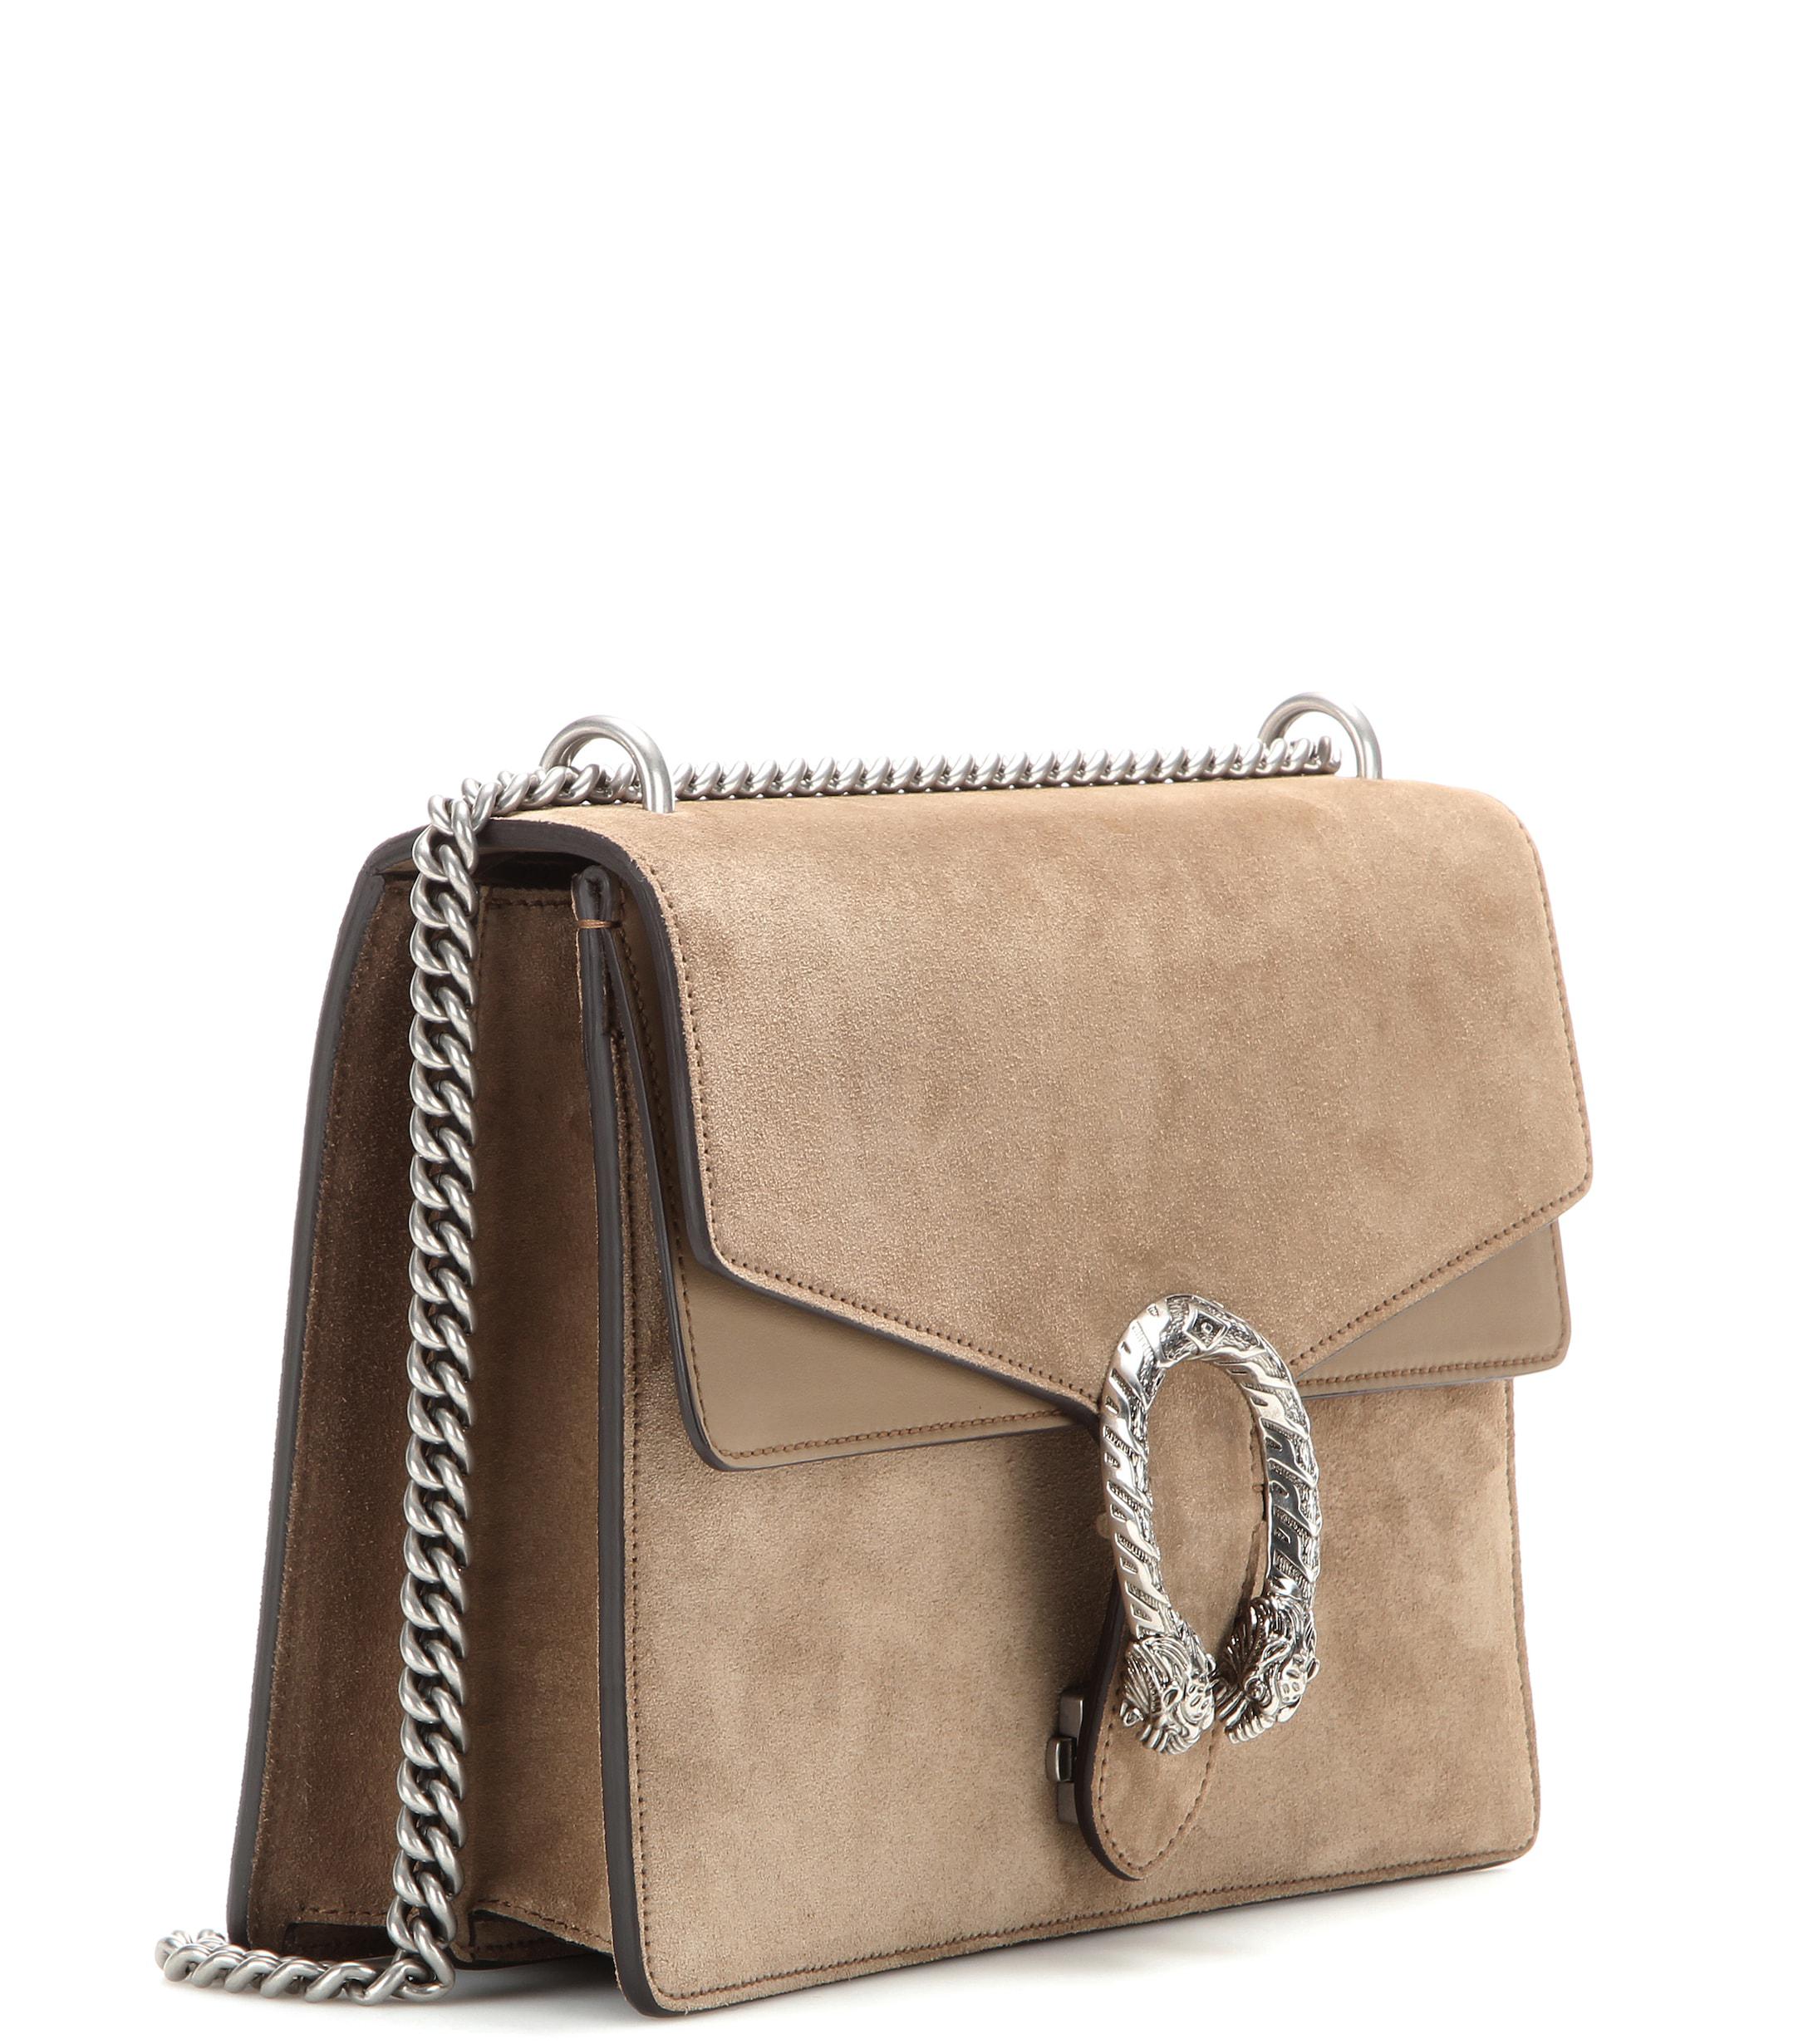 Gucci Dionysus Medium Suede Shoulder Bag in Brown - Lyst